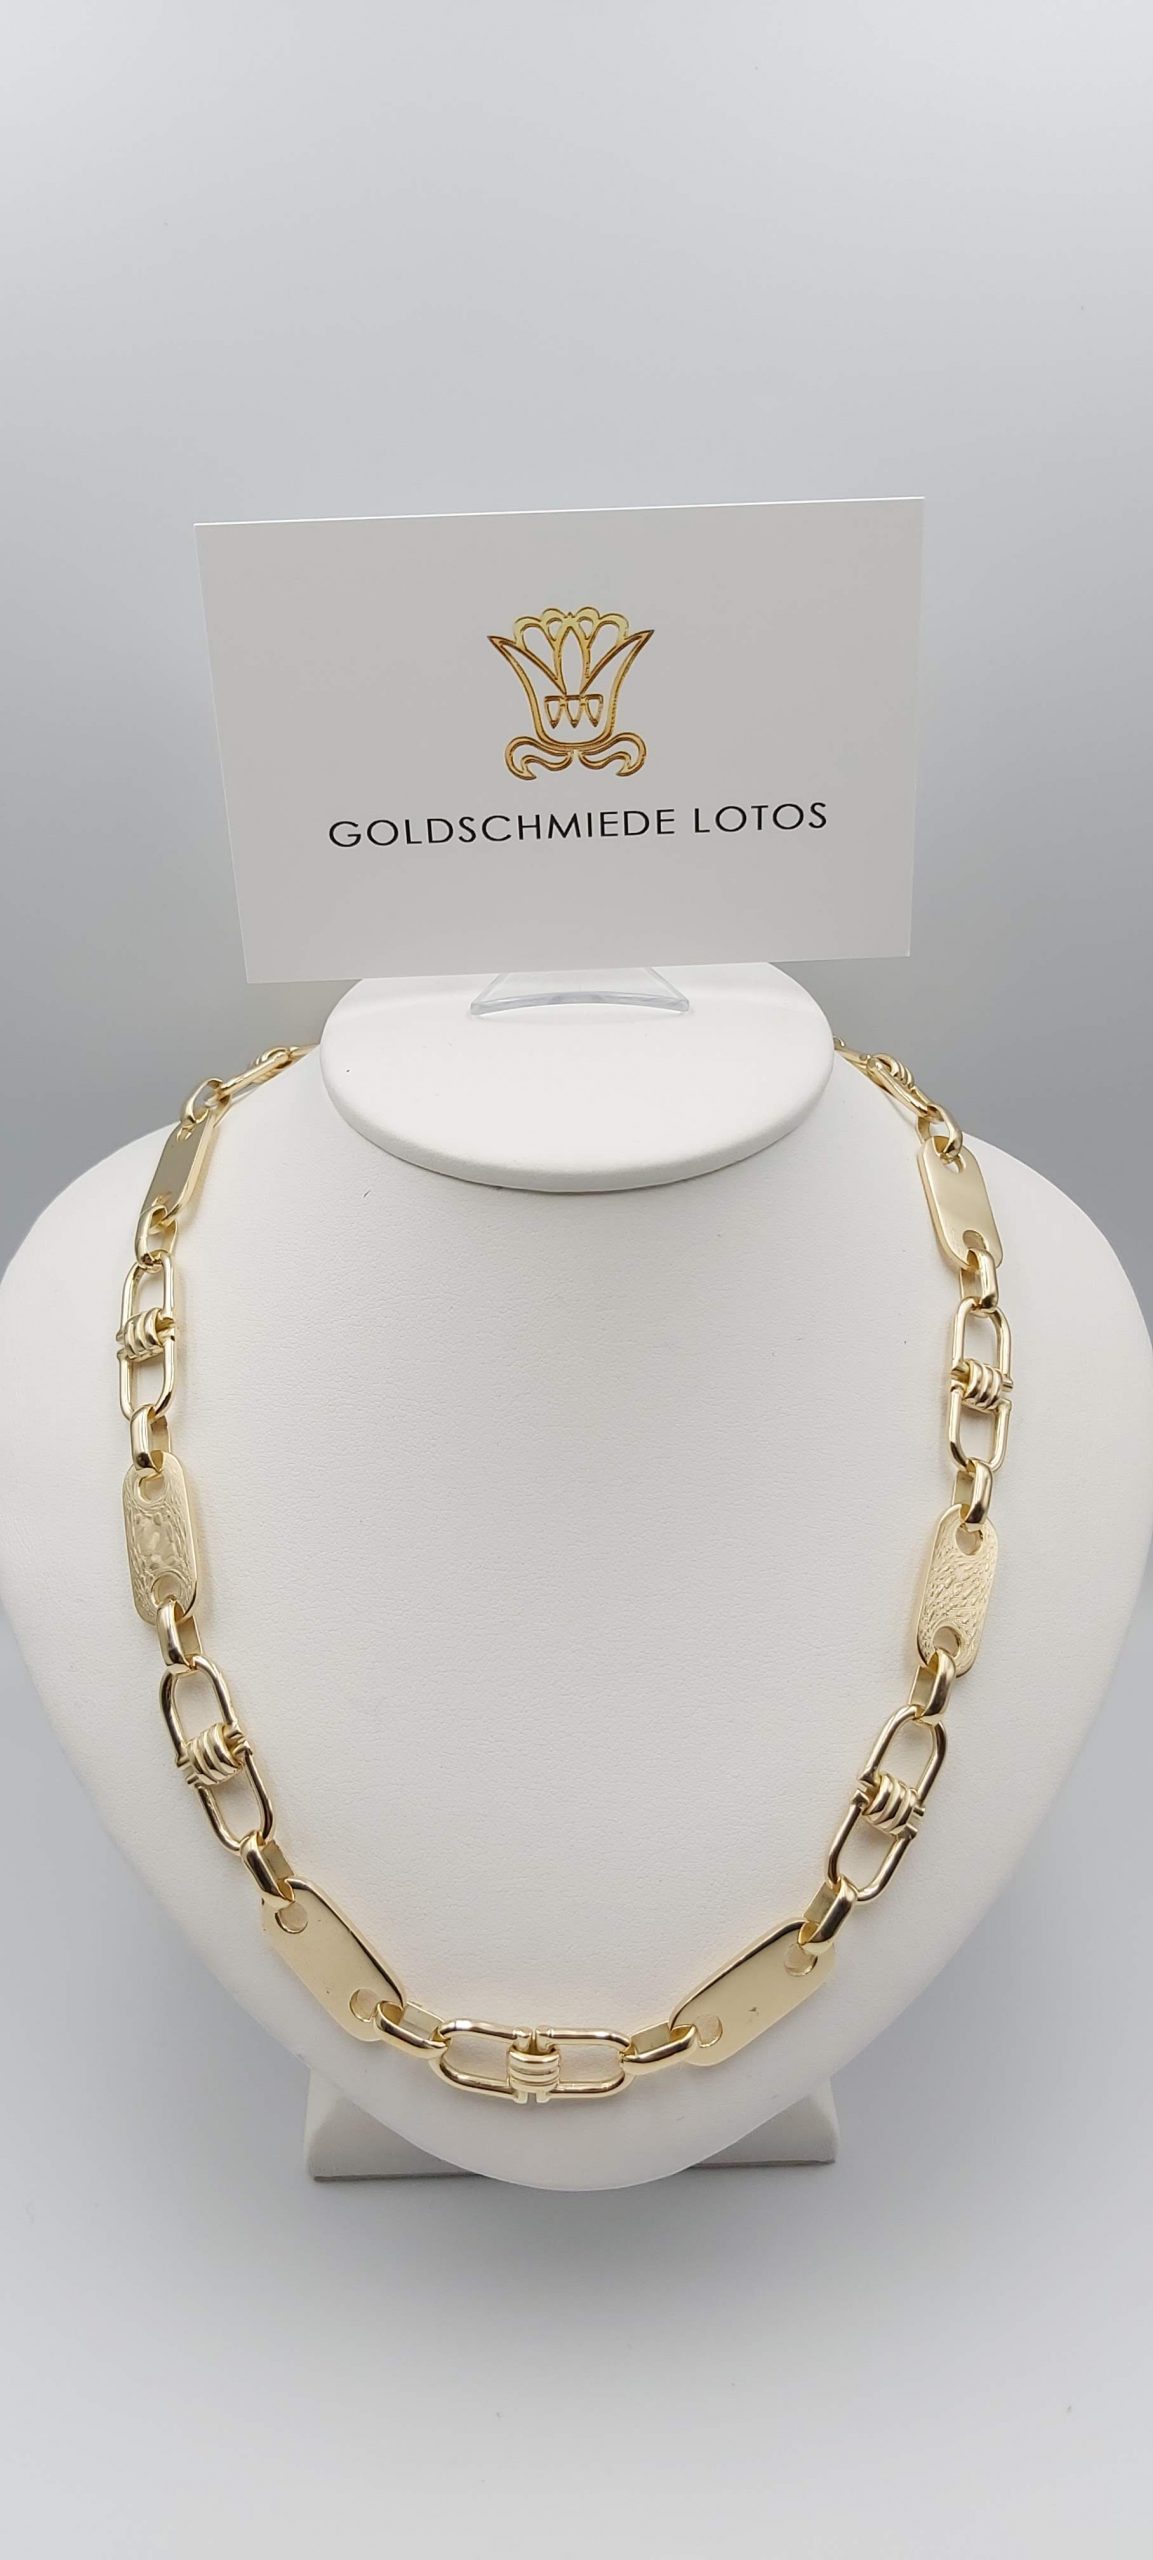 Goldschmiede-lotos Plattenkette-Steigbügelkette-Goldkette-875er